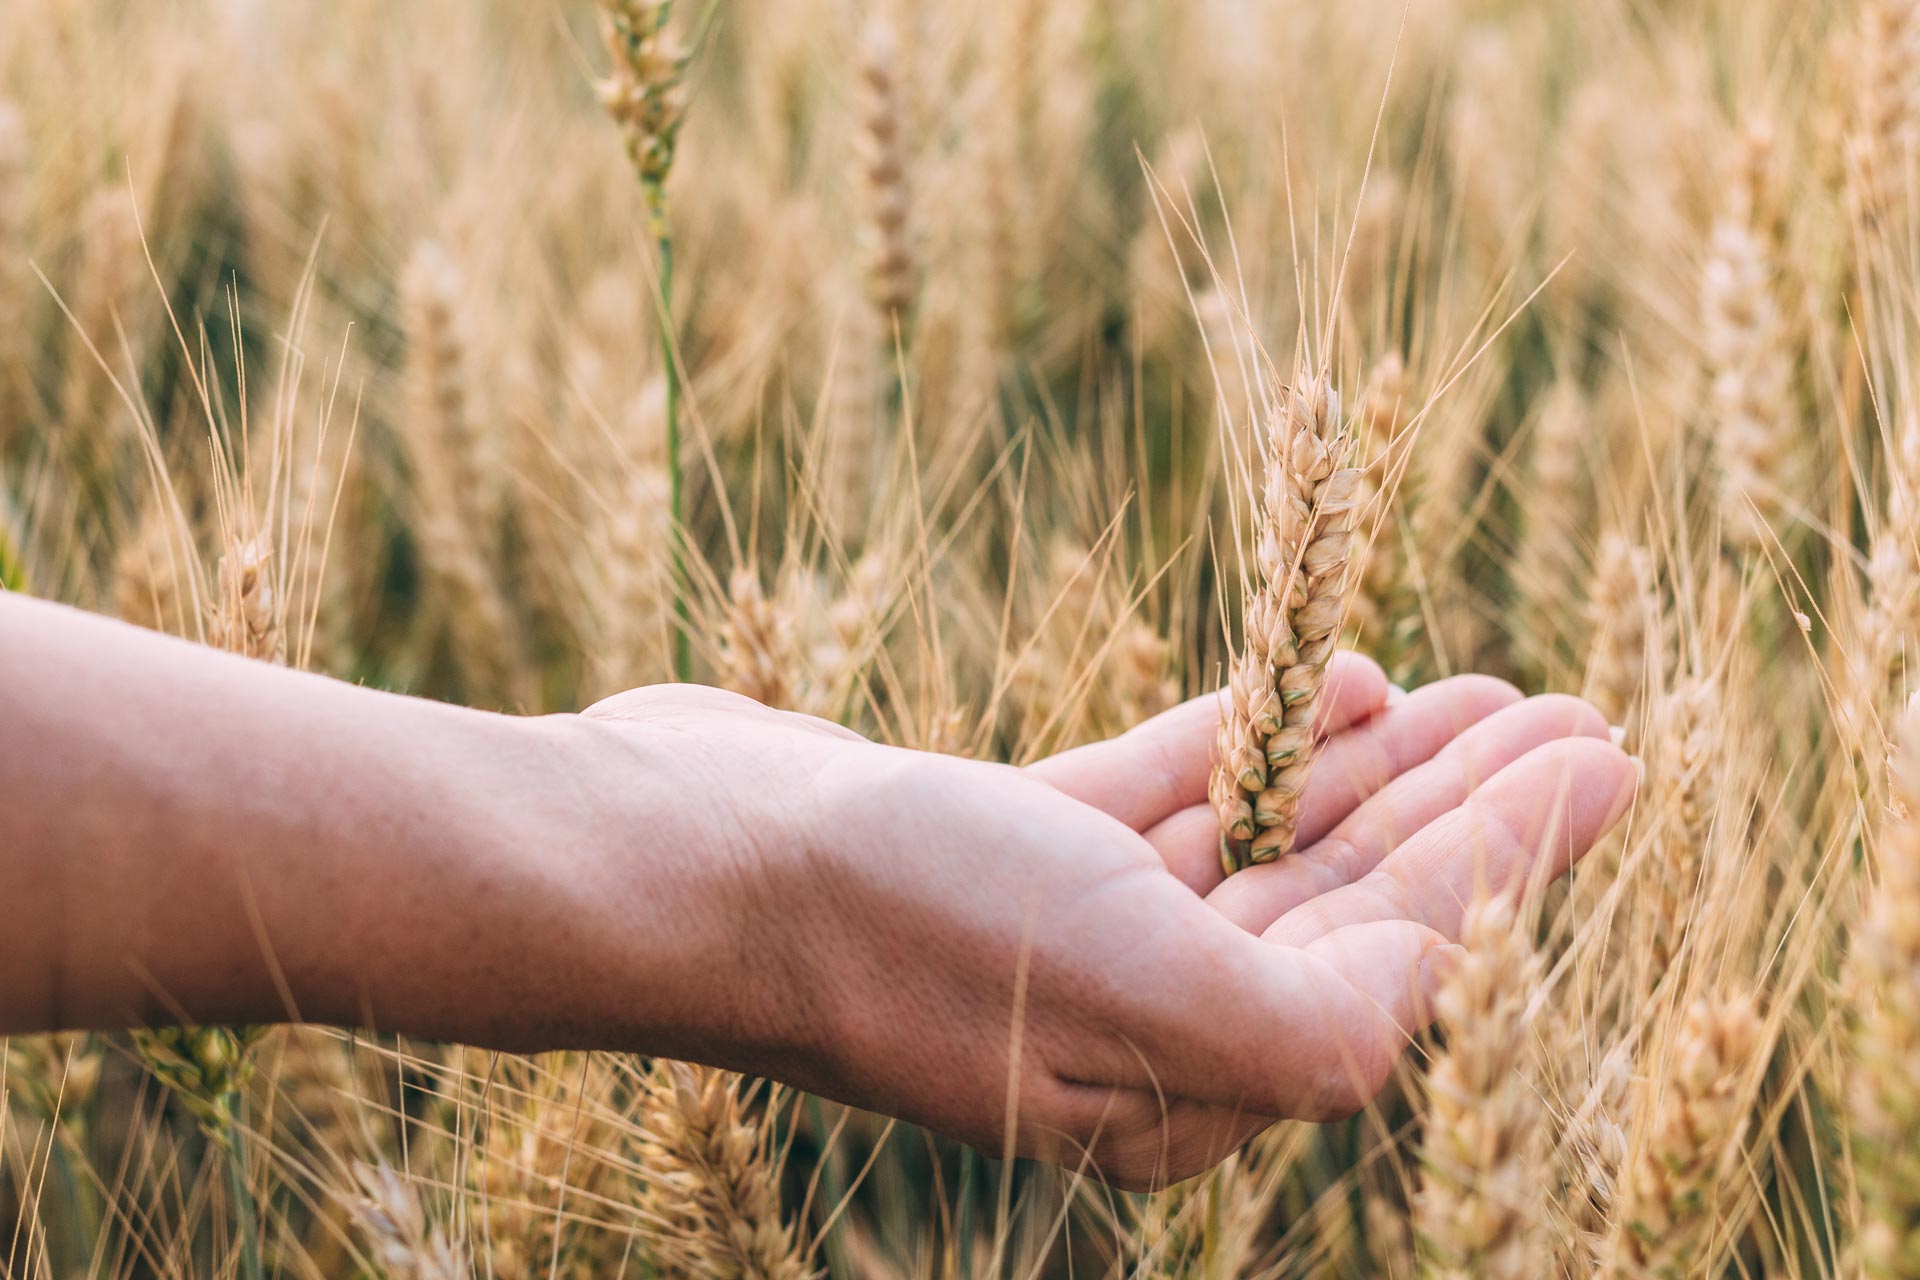 AJUTOR DE URGENTA PENTRU PRODUCATORII AGRICOLI – Banii se acorda celor afectati de cresterea importurilor de cereale din Ucraina